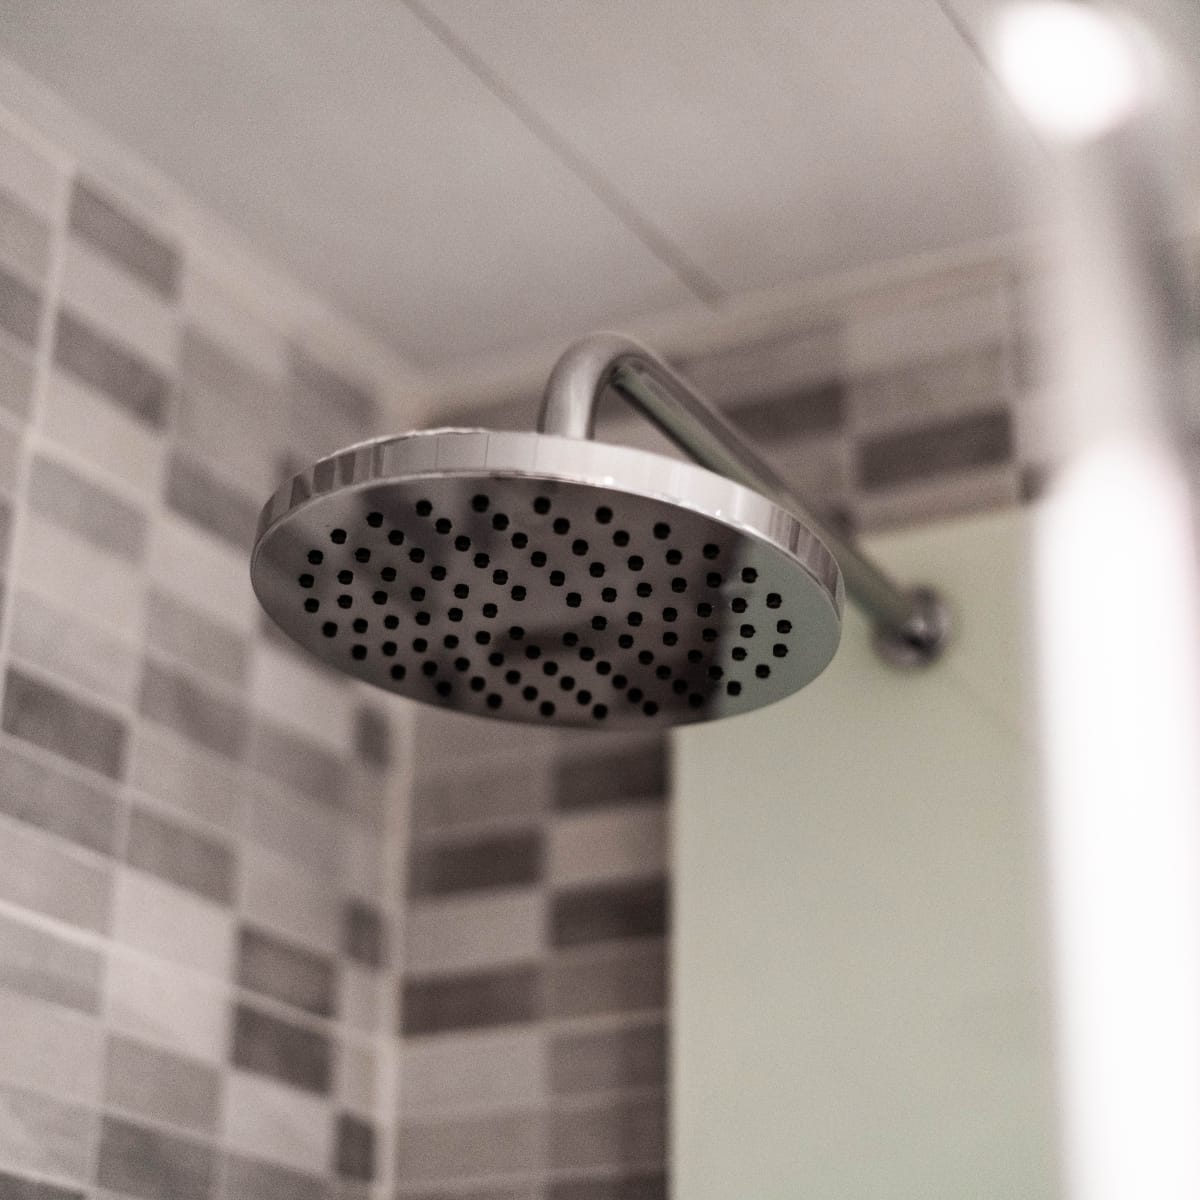 How to Prevent a Shower Clog - Magnolia Companies